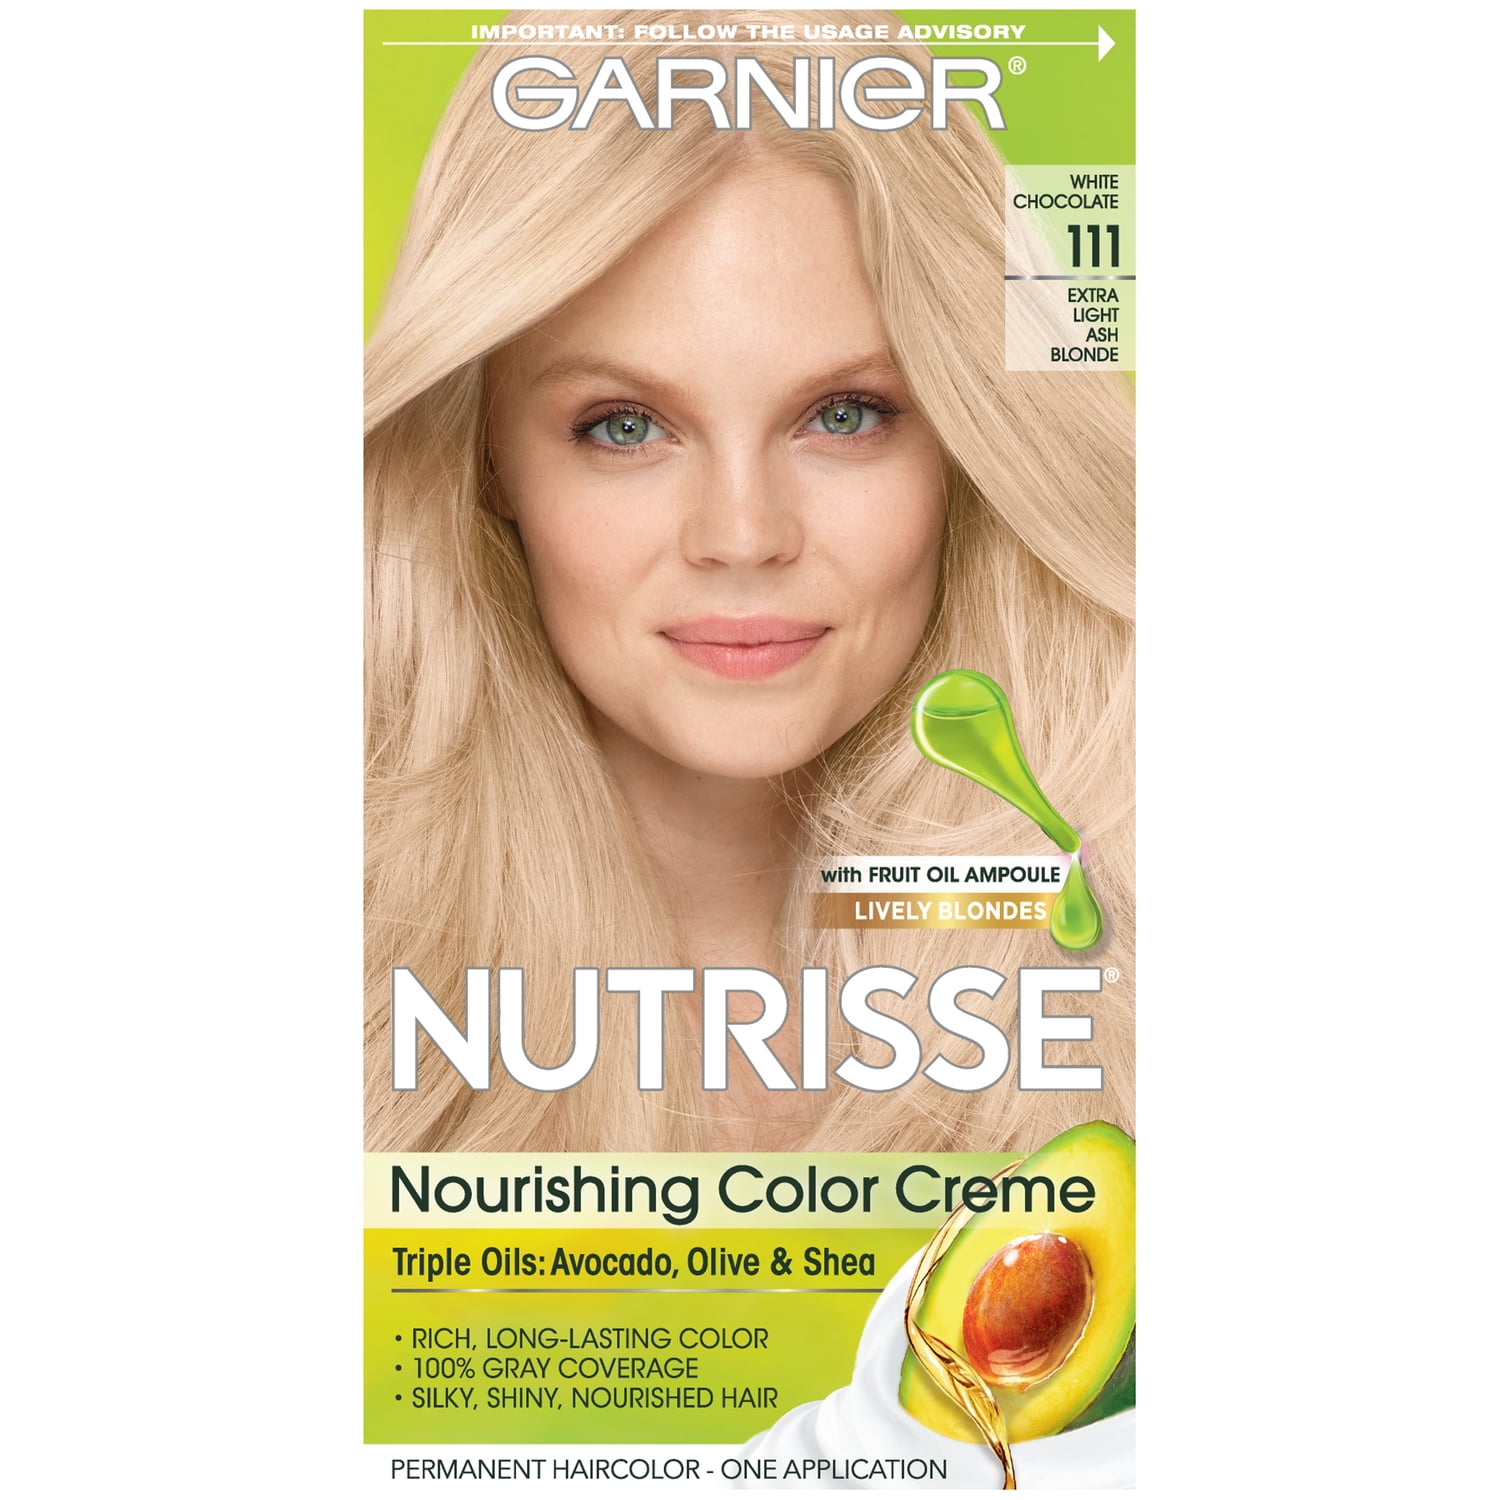 Smidighed opfindelse Bevægelse Garnier Nutrisse Nourishing Hair Color Creme, 111 Extra-Light Ash Blonde  (White Chocolate), 1 Kit - Walmart.com